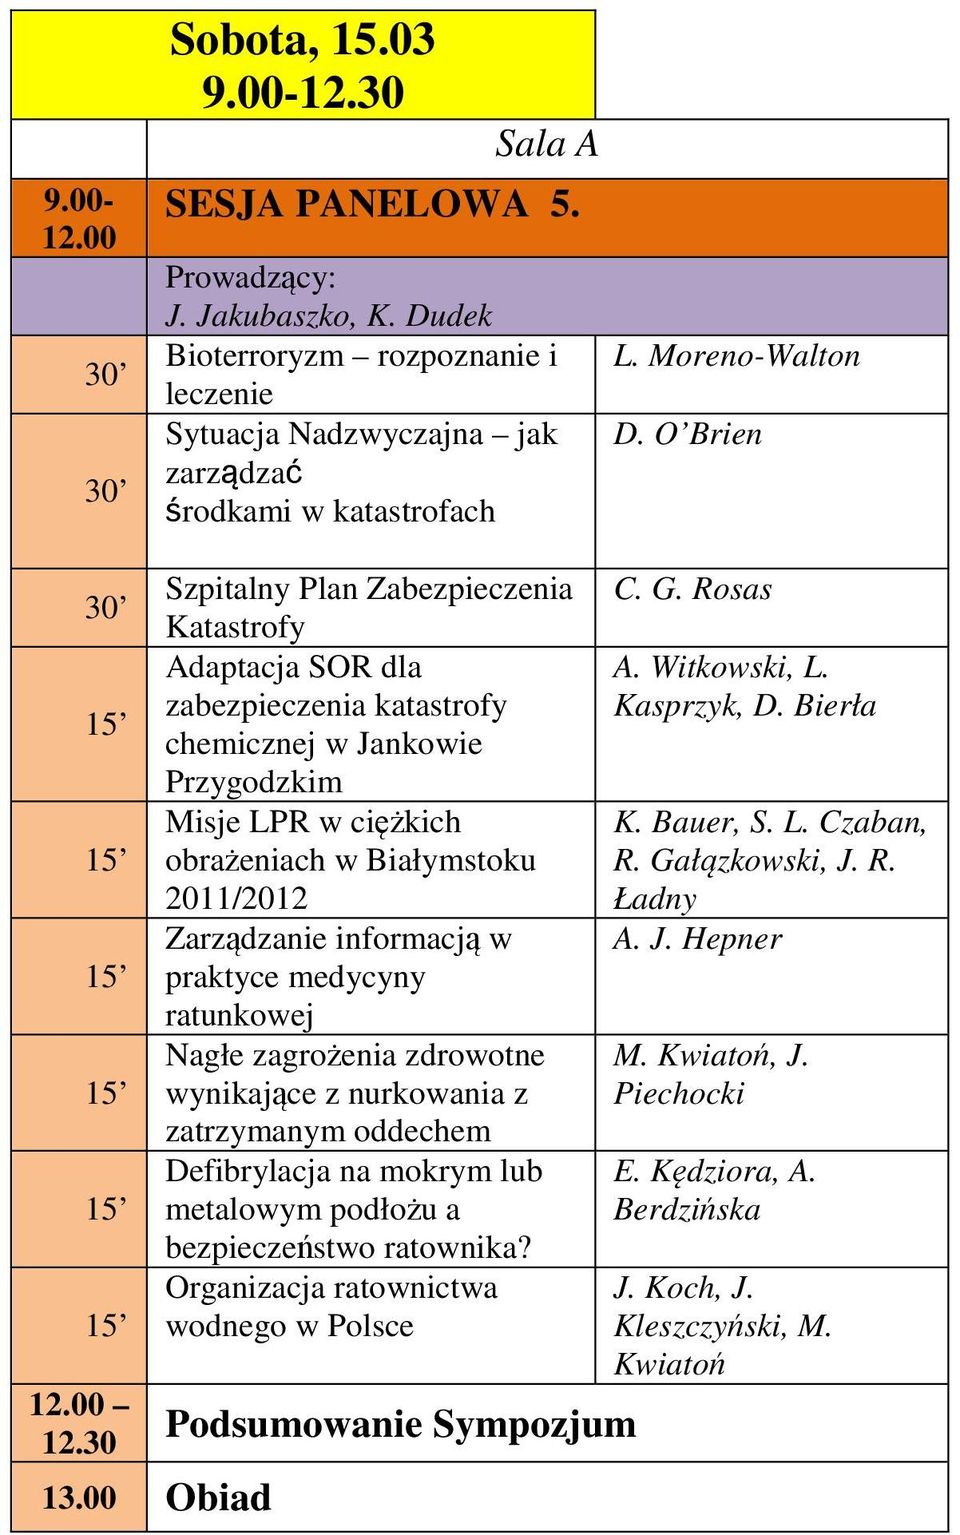 30 Szpitalny Plan Zabezpieczenia Katastrofy Adaptacja SOR dla zabezpieczenia katastrofy chemicznej w Jankowie Przygodzkim Misje LPR w ciężkich obrażeniach w Białymstoku 2011/2012 Zarządzanie